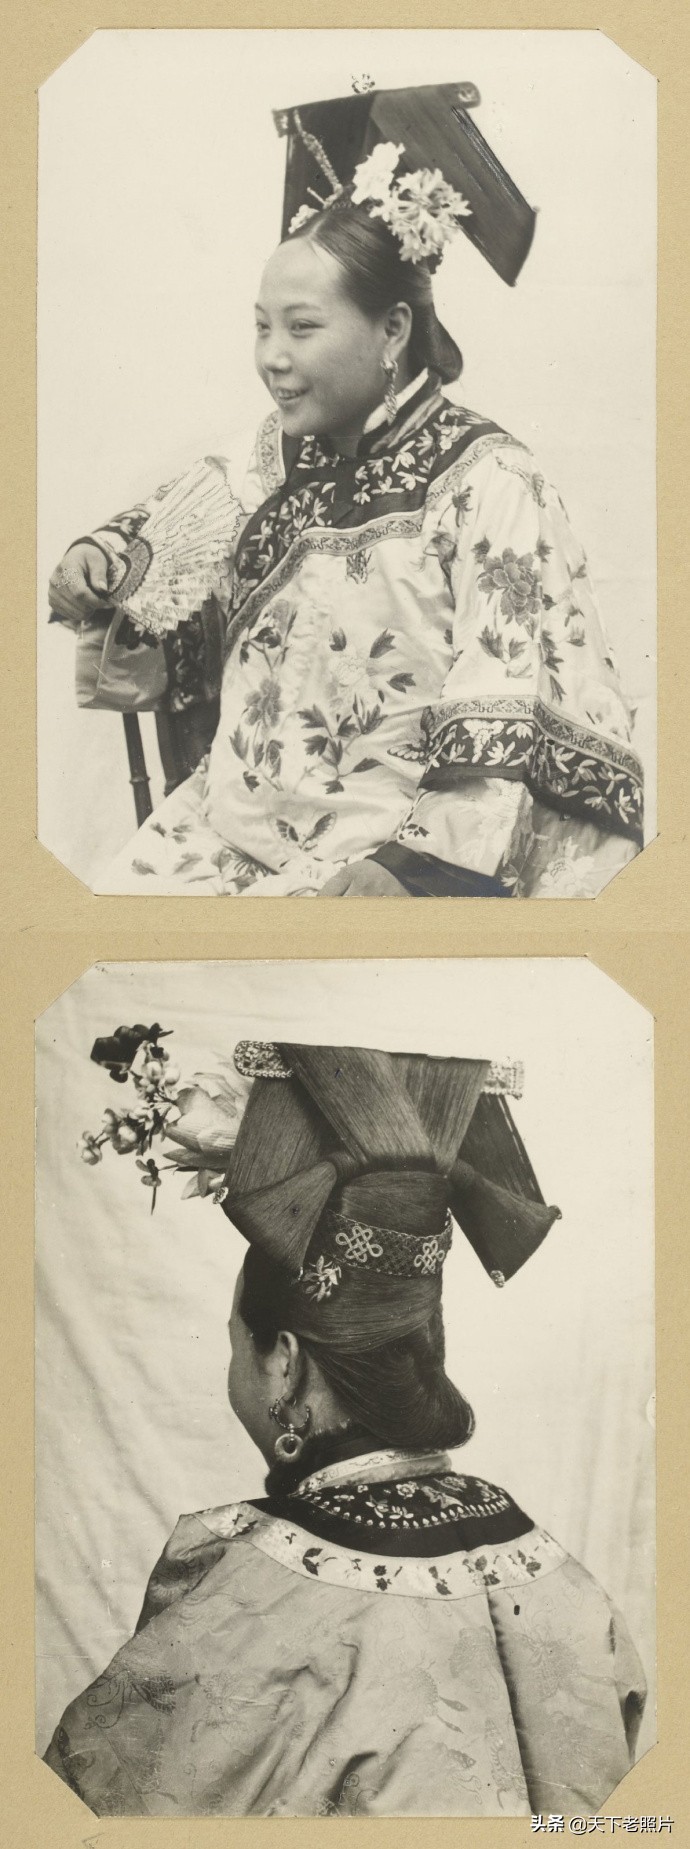 1900年代 真实清朝富家小姐照片 和你想象的一样吗？